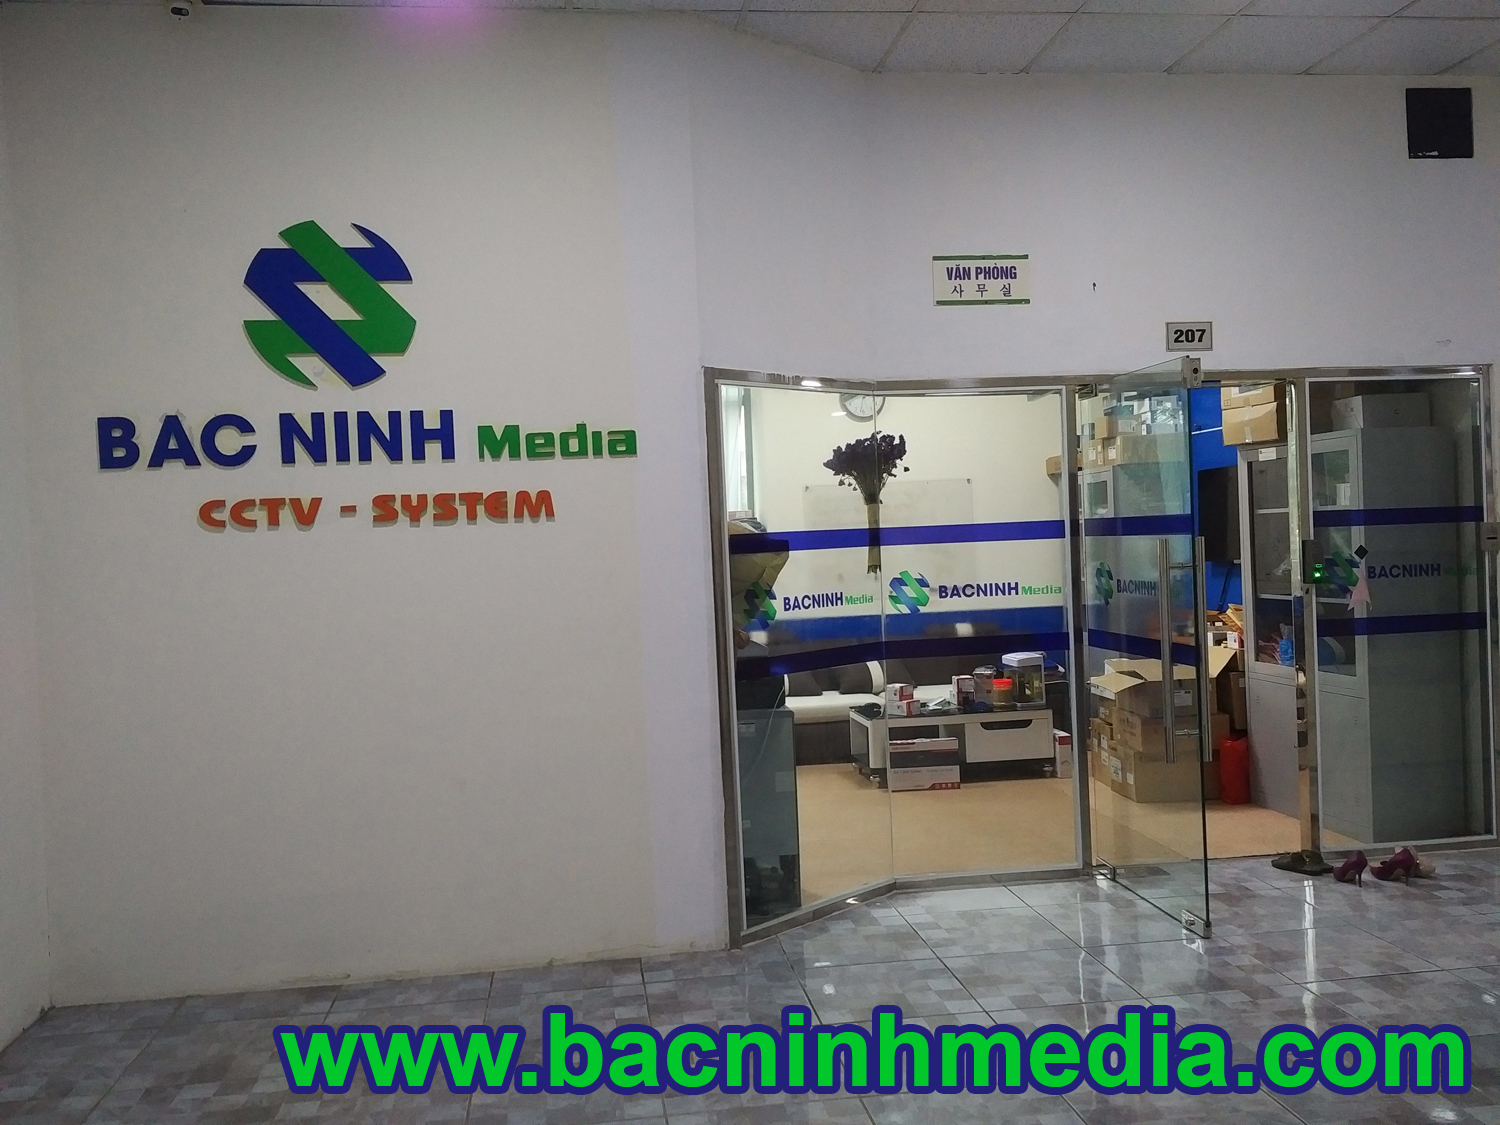 Thi công cửa kính thủy lực tại Bắc Ninh - Bắc Ninh Media